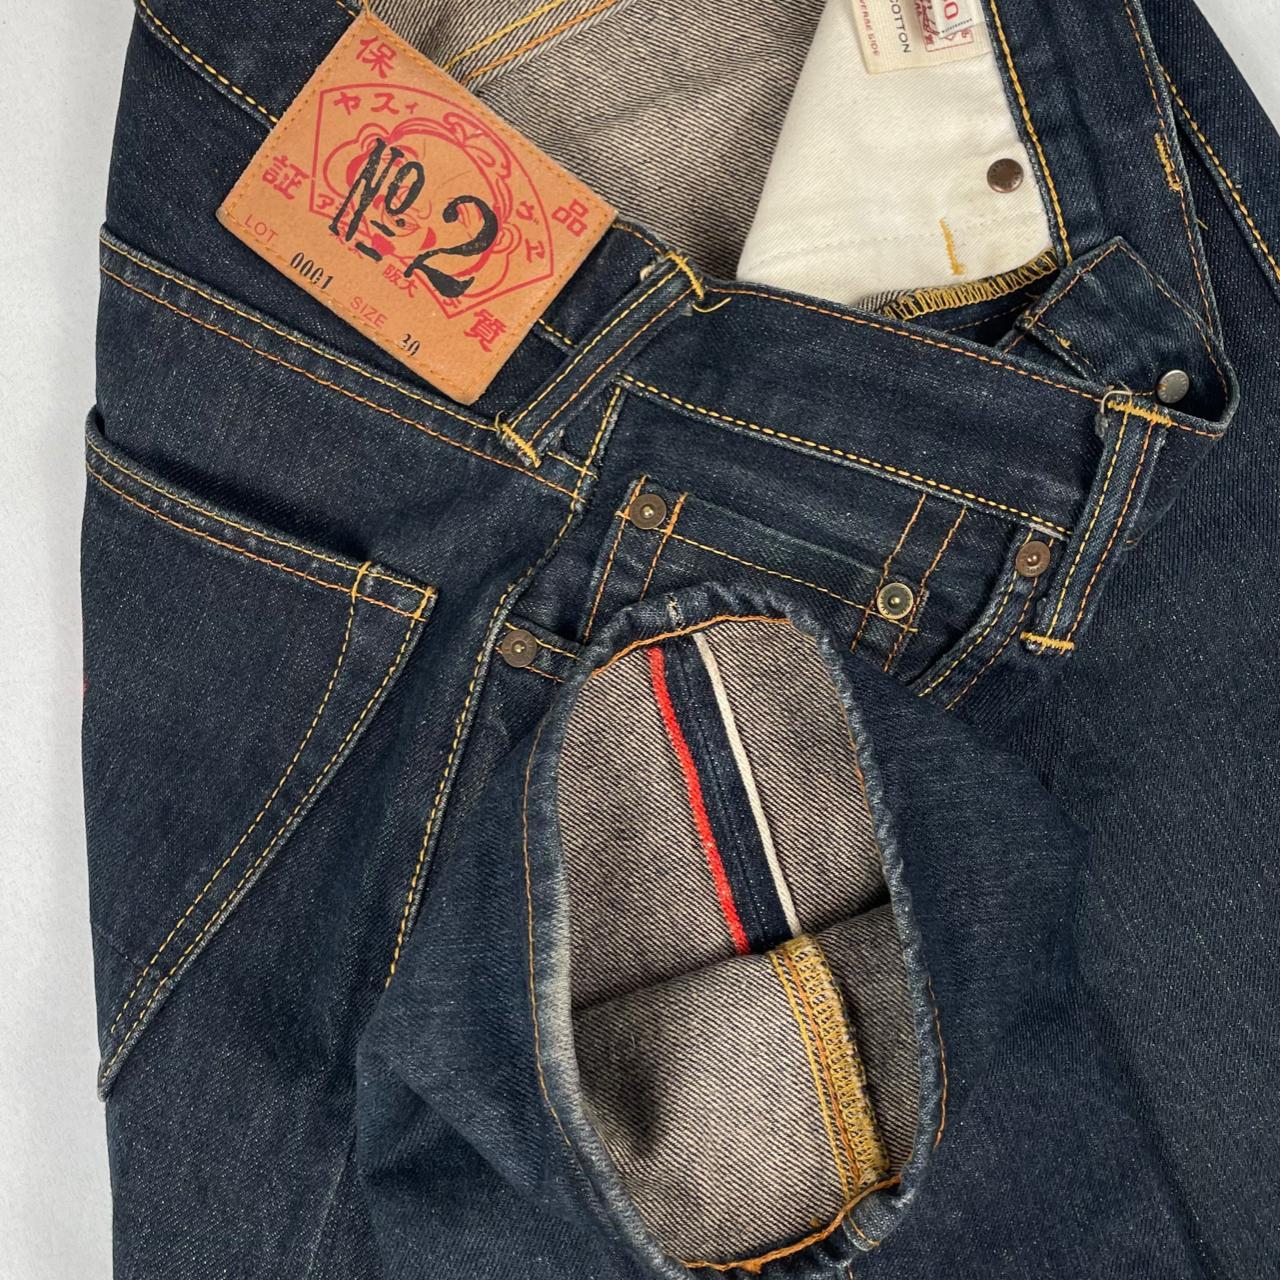 Authentic Vintage Diacock Evisu Jeans  (29")